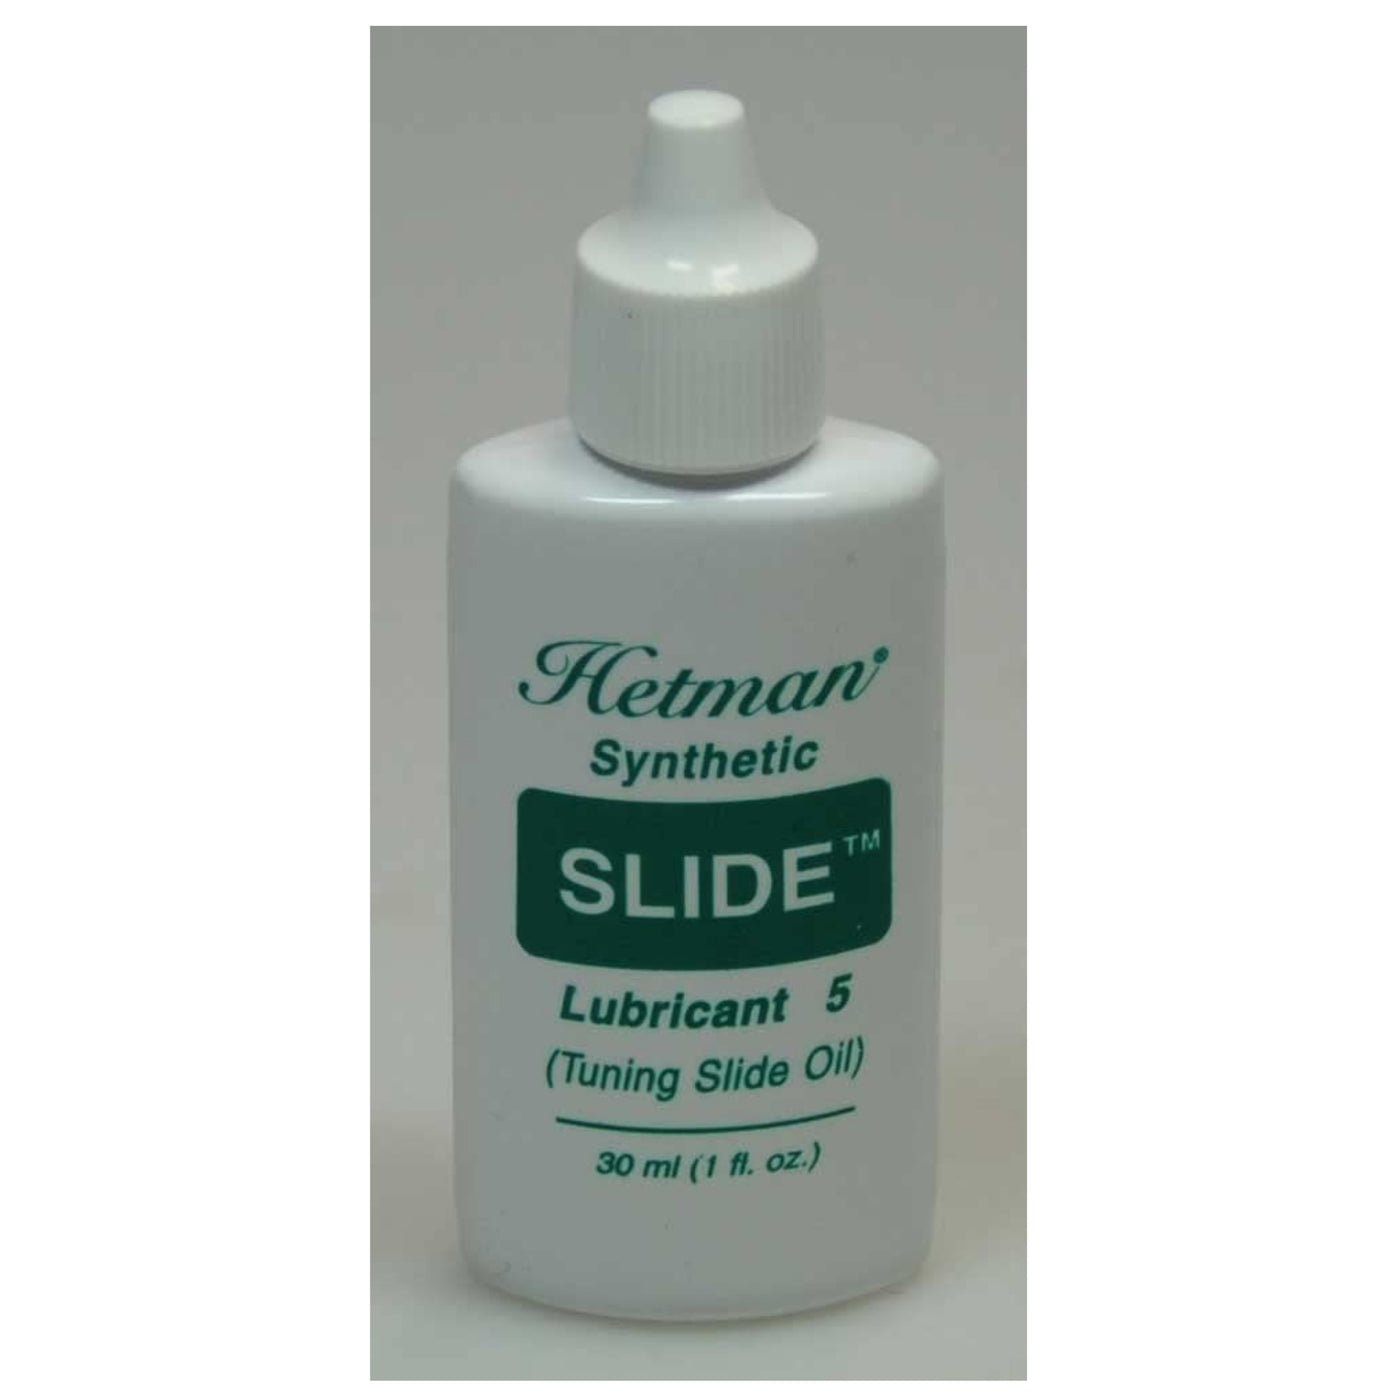 Hetman Slide Oil, #5, 30ml Narrow Tip